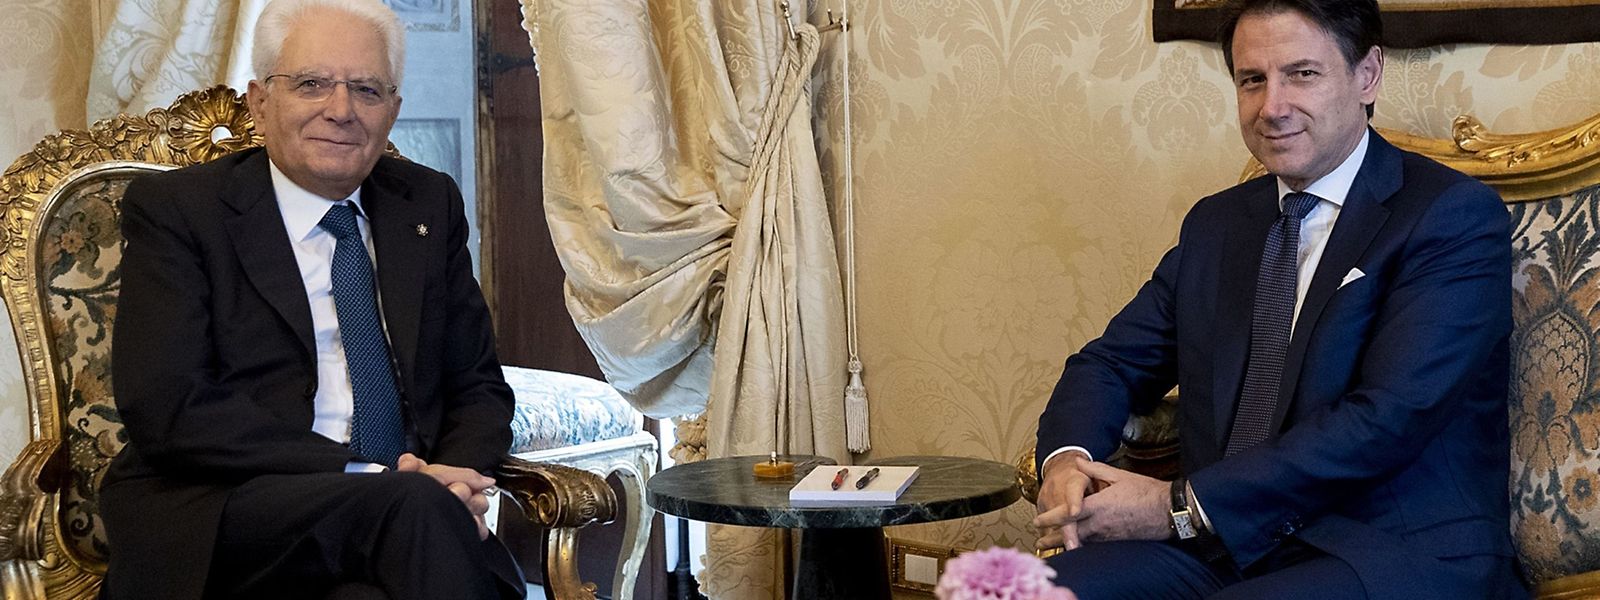 Staatspräsident Sergio Mattarella (l.) beauftragte am Donnerstag den bisherigen Ministerpräsidenten Giuseppe Conte (r.) mit der Bildung einer neuen Regierung. 